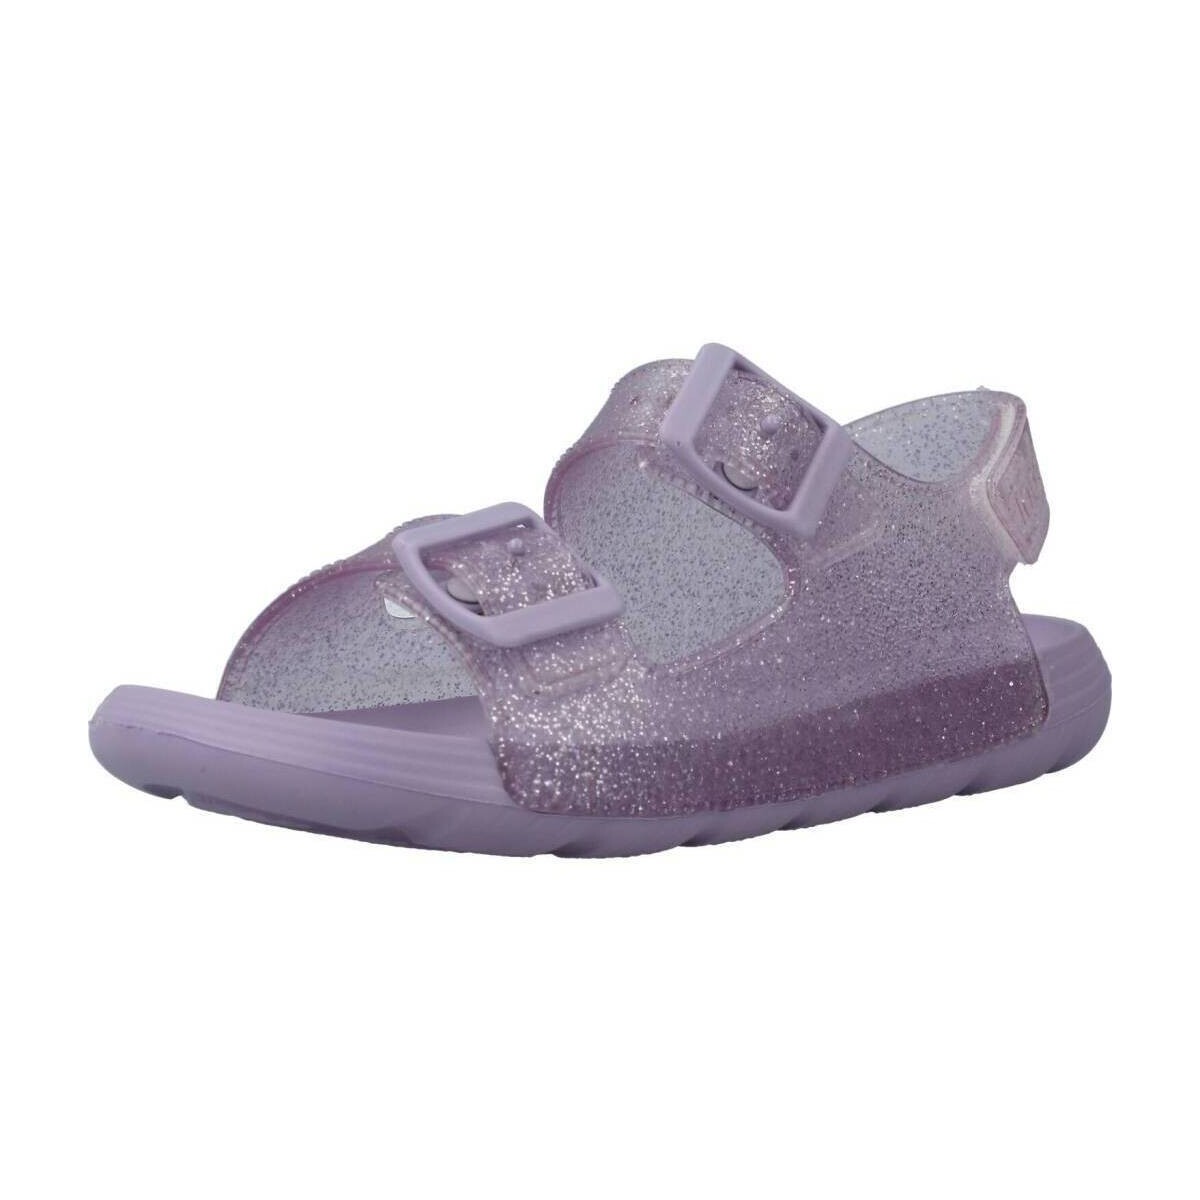 Παπούτσια Κορίτσι Σαγιονάρες IGOR MAUI Violet